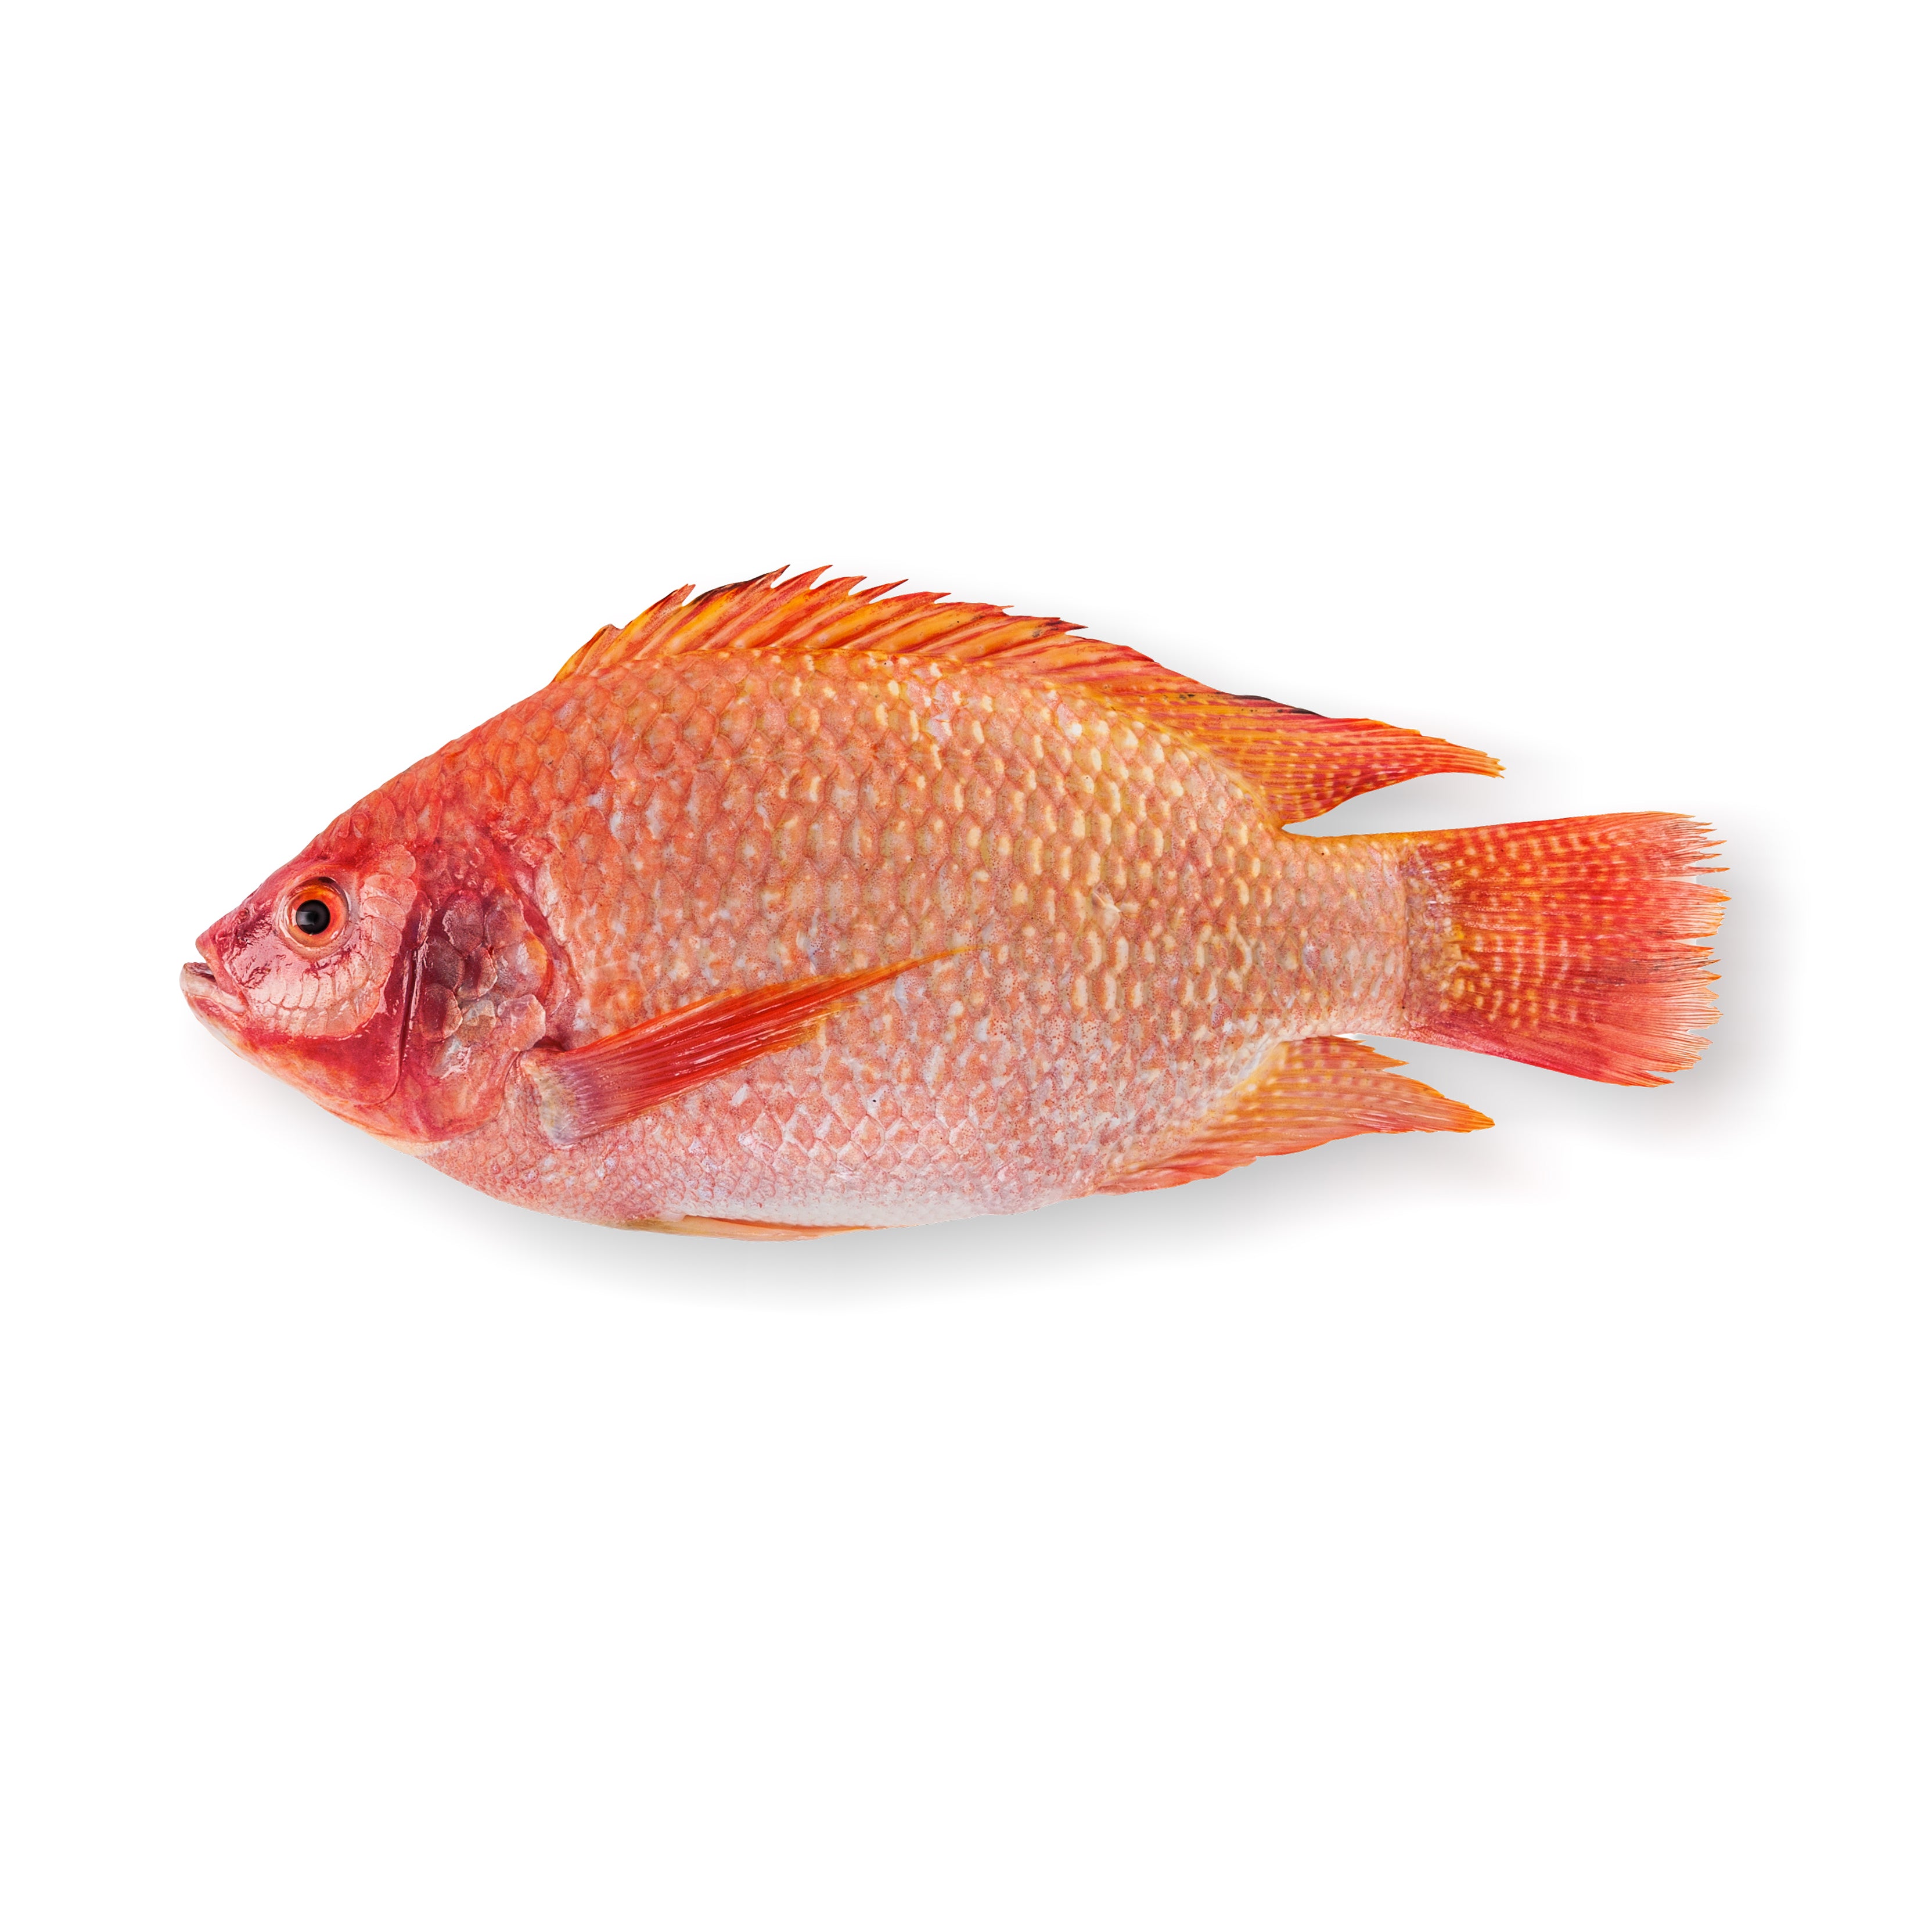 אדמונית אמנון אדום - דג ברשת משוחי דגים ברמת השרון והסביבה